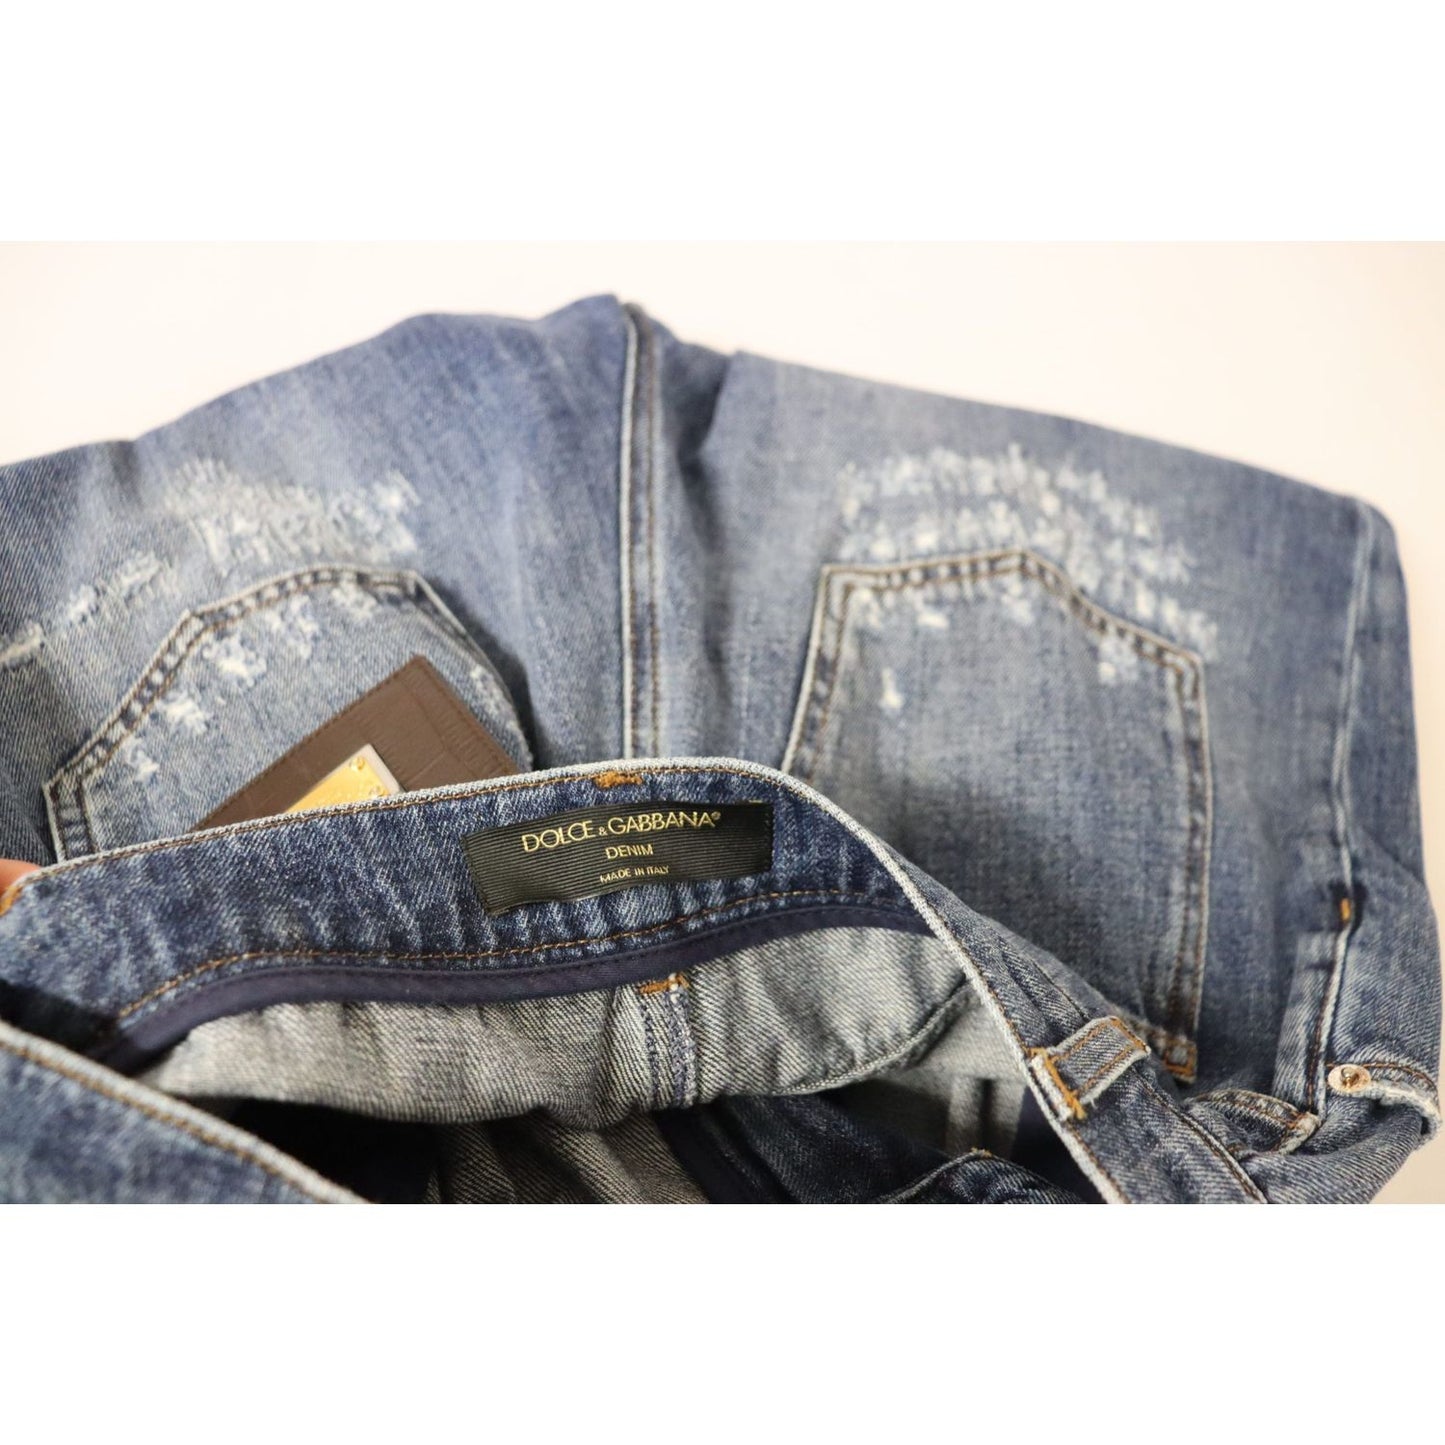 Dolce & GabbanaHigh Waist Skinny Denim Jeans - Chic Blue WashedMcRichard Designer Brands£479.00